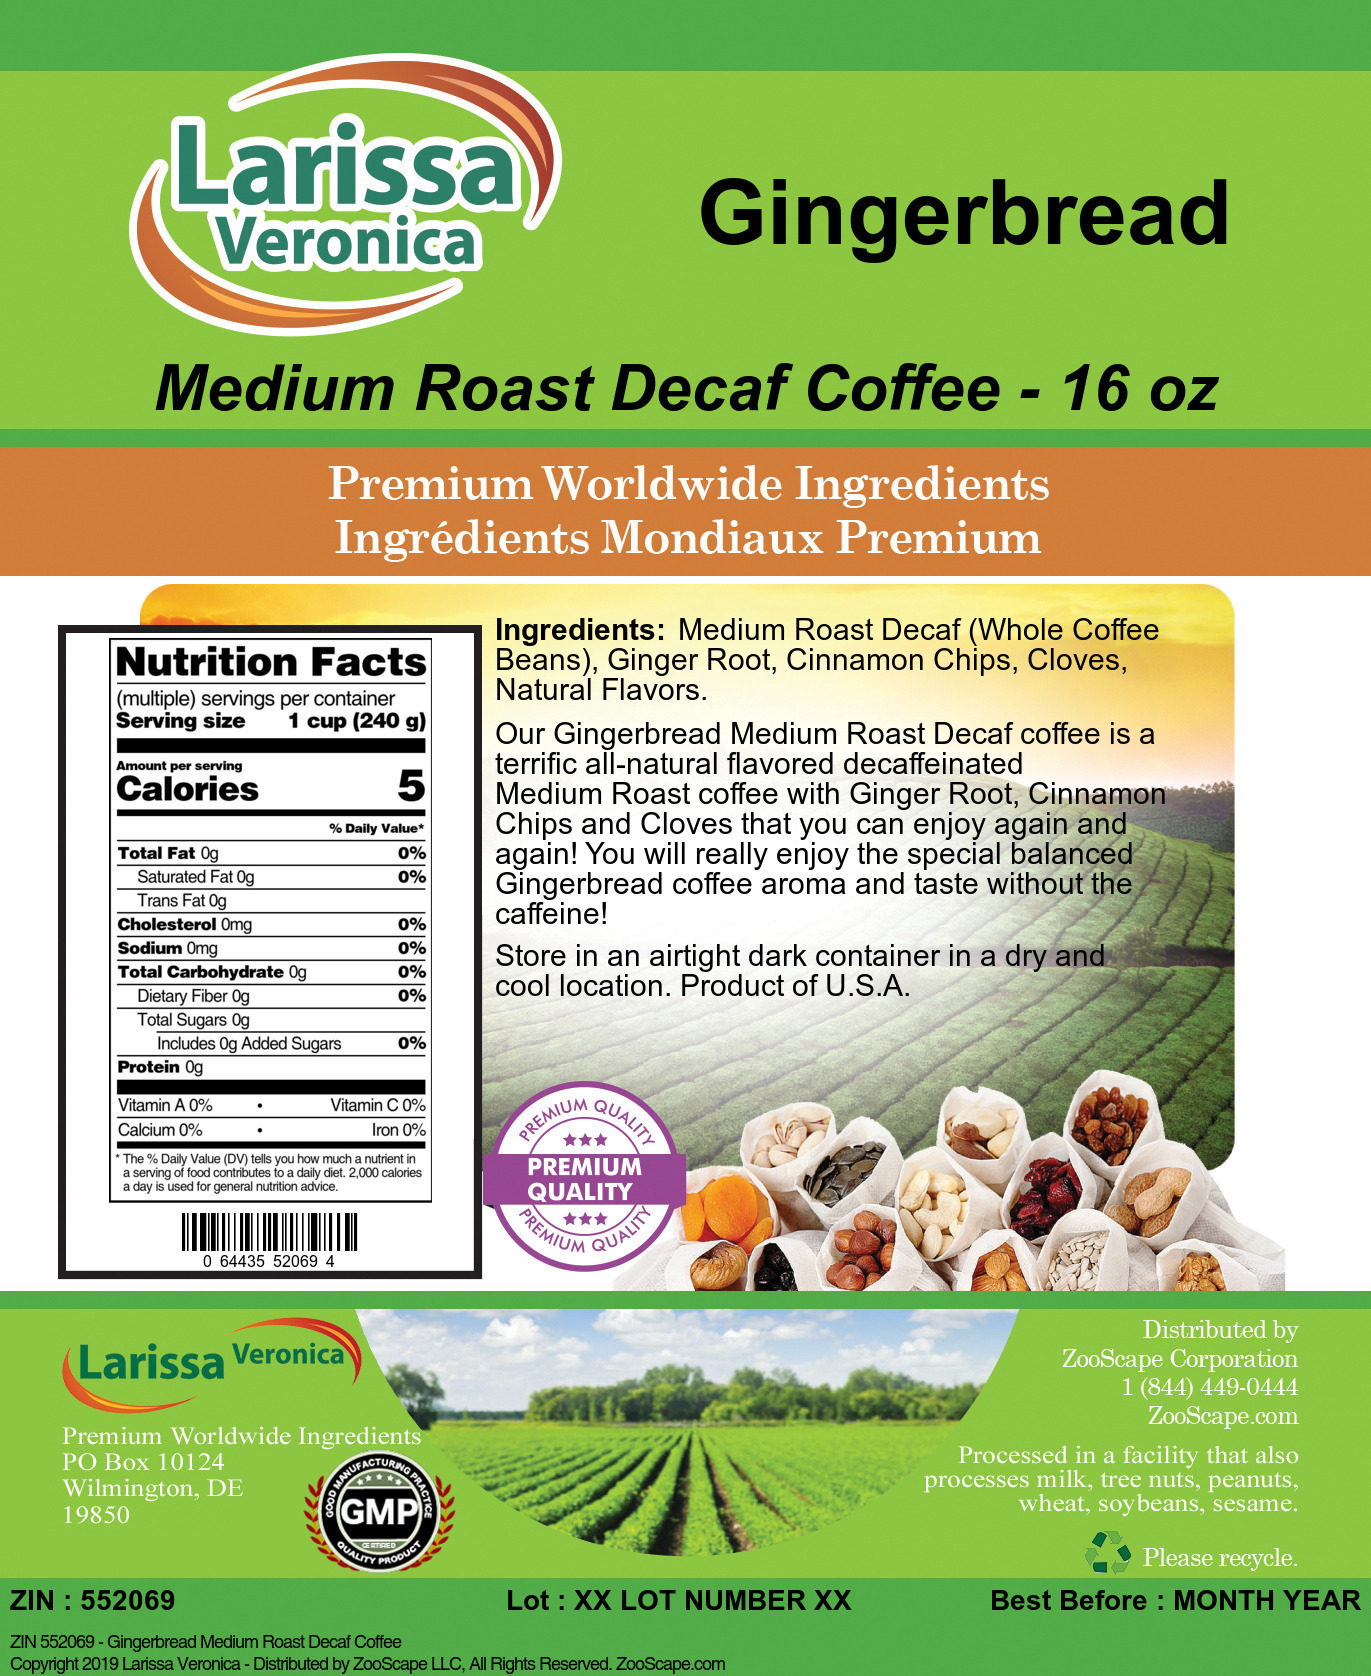 Gingerbread Medium Roast Decaf Coffee - Label